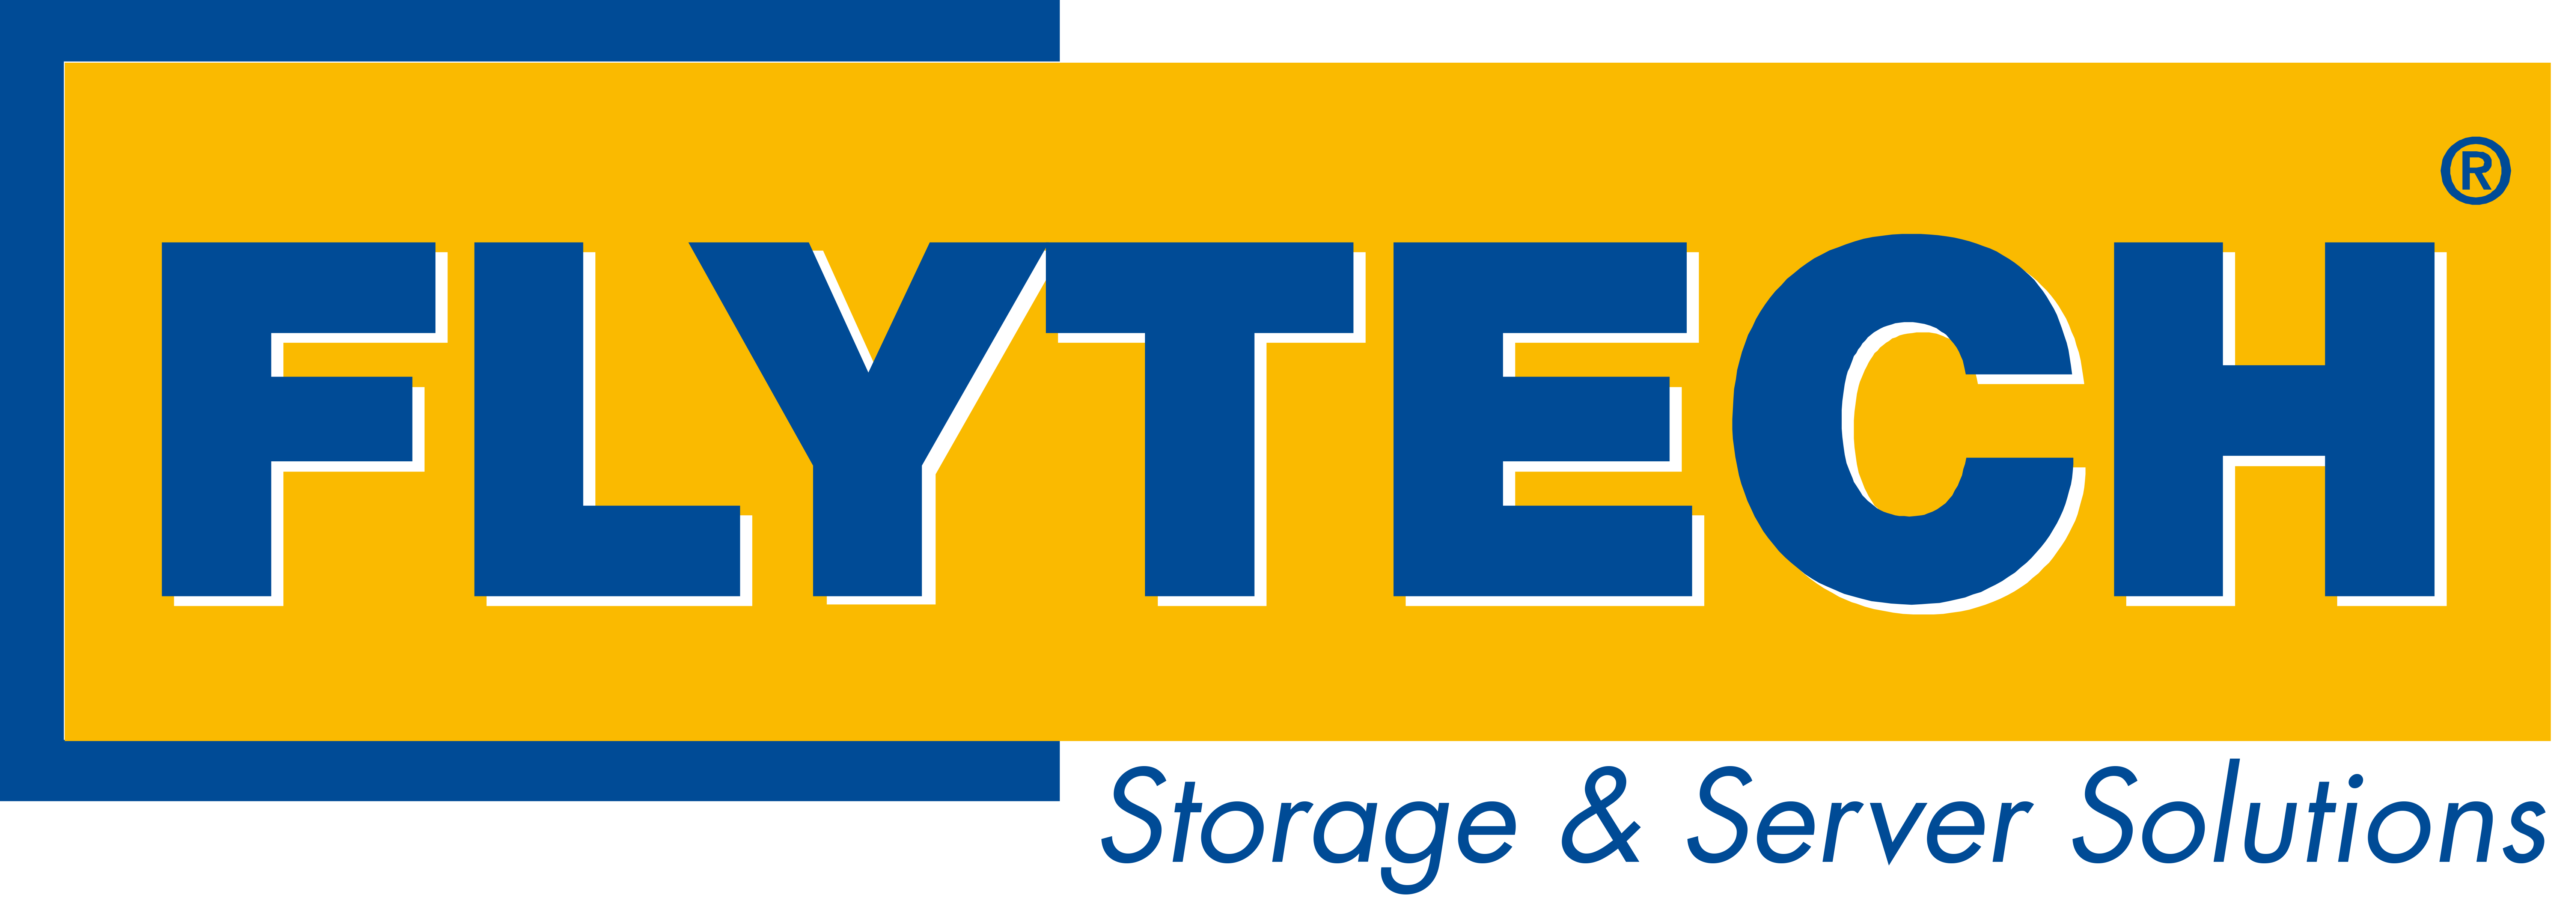 logo-flytech-S&S-vectorizado